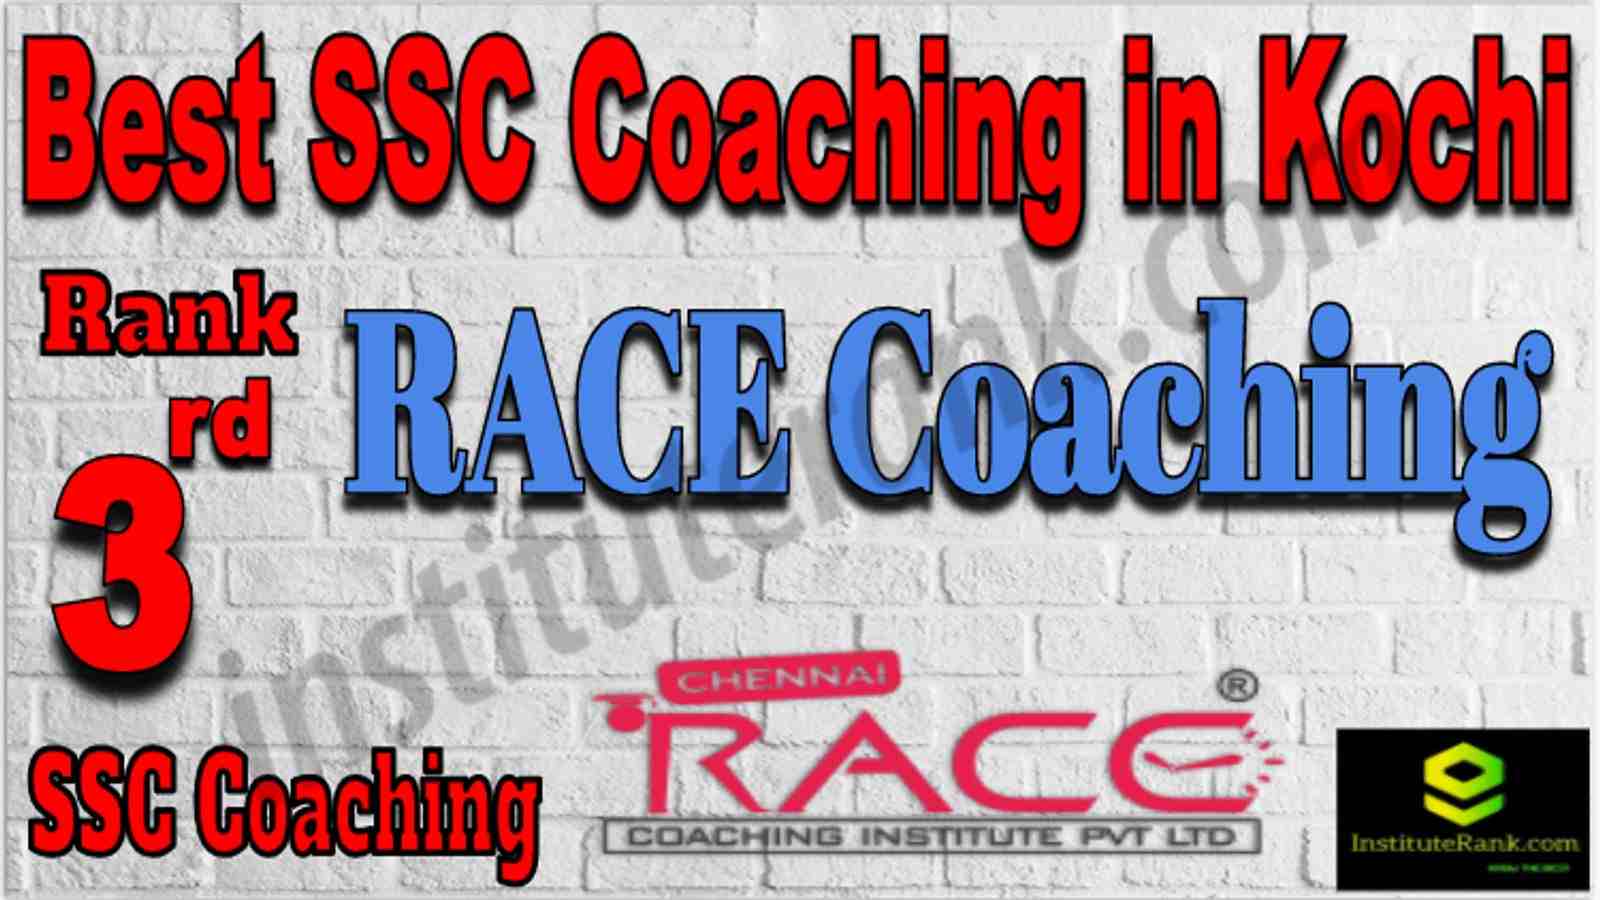 Rank 3 Best SSC Coaching in Kochi